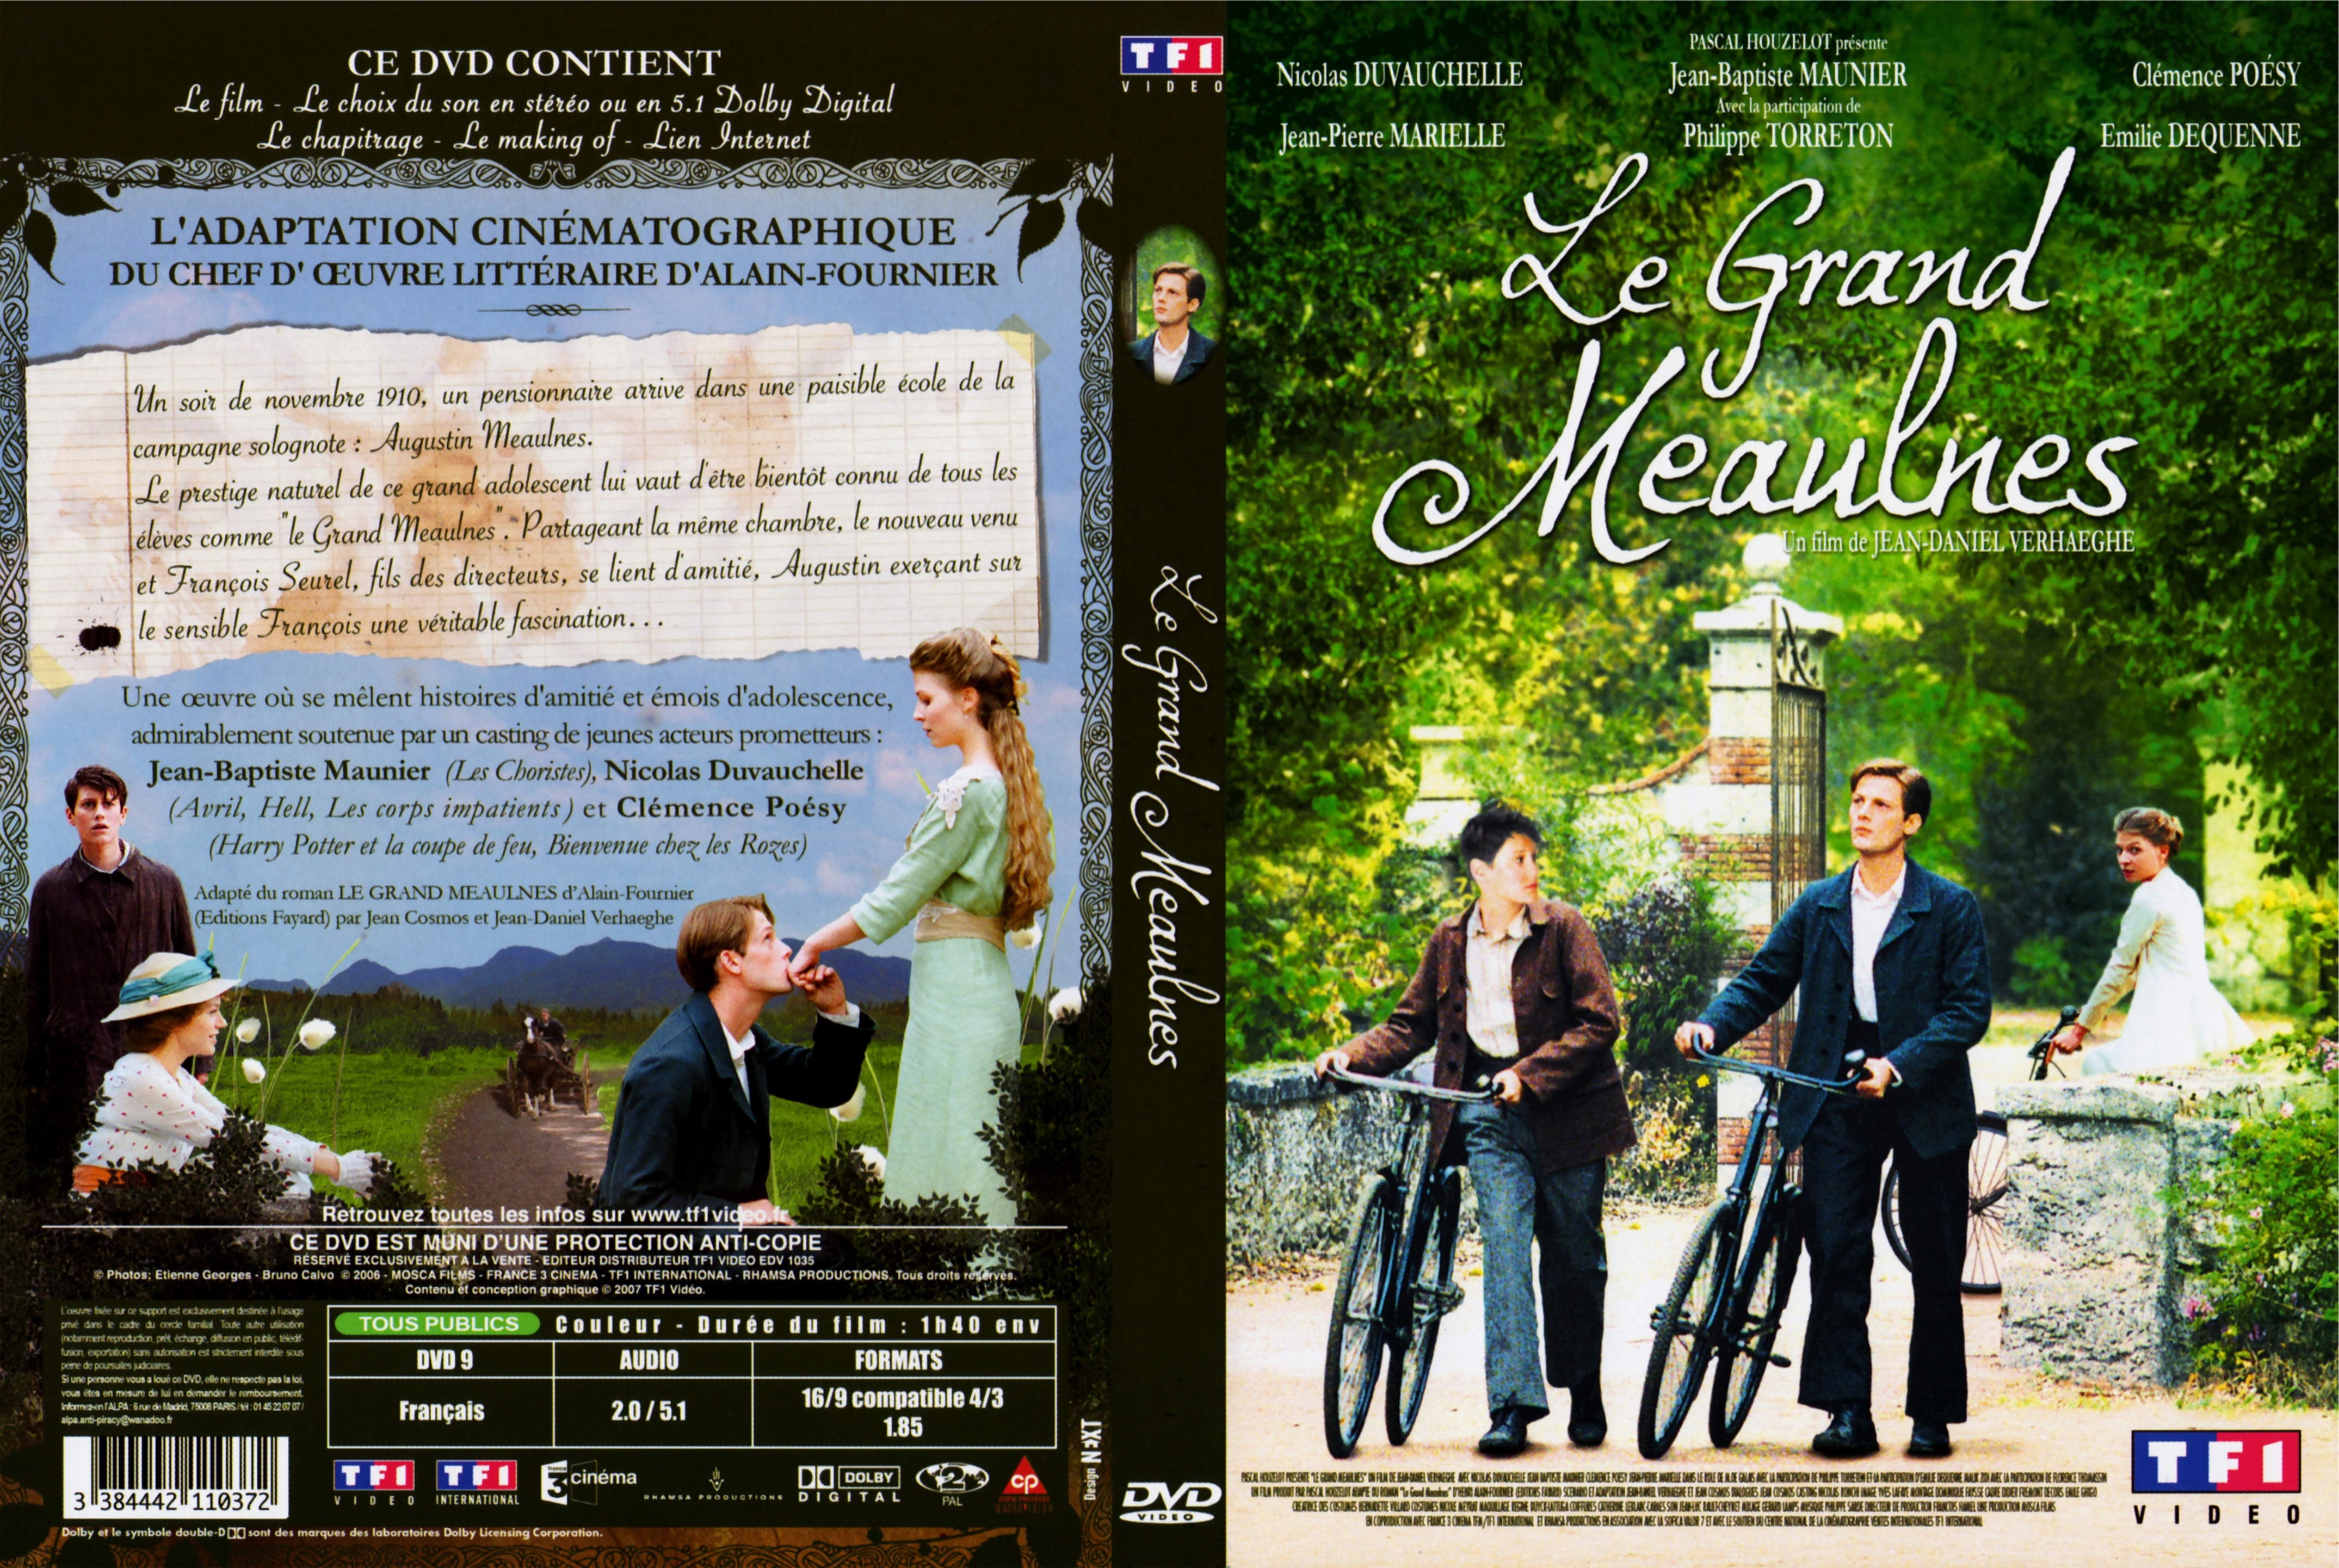 Jaquette DVD Le grand meaulnes v2